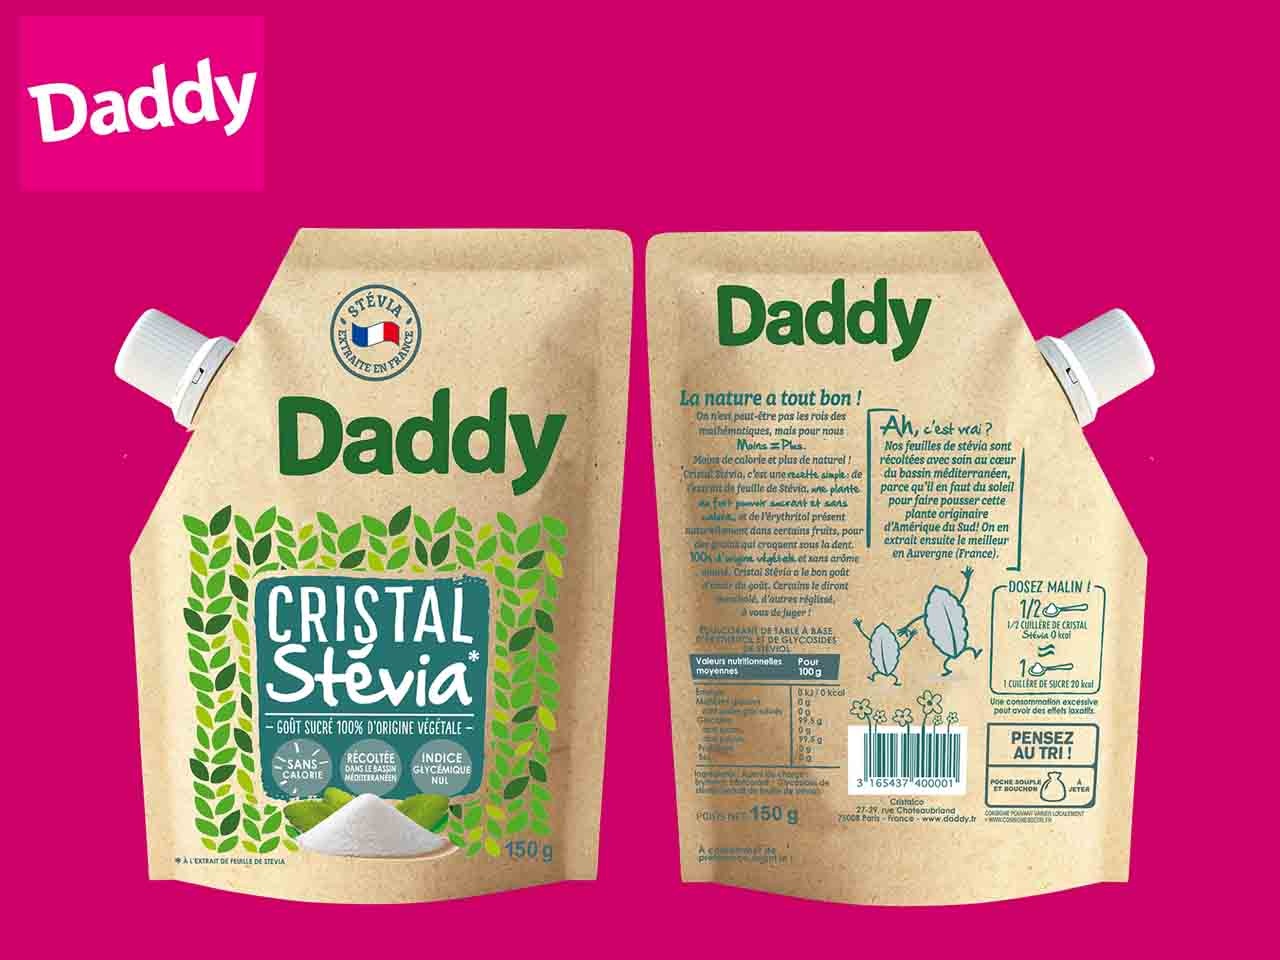 Daddy présente sa dernière innovation, Cristal Stevia, et ses nouveaux emballages écologiques